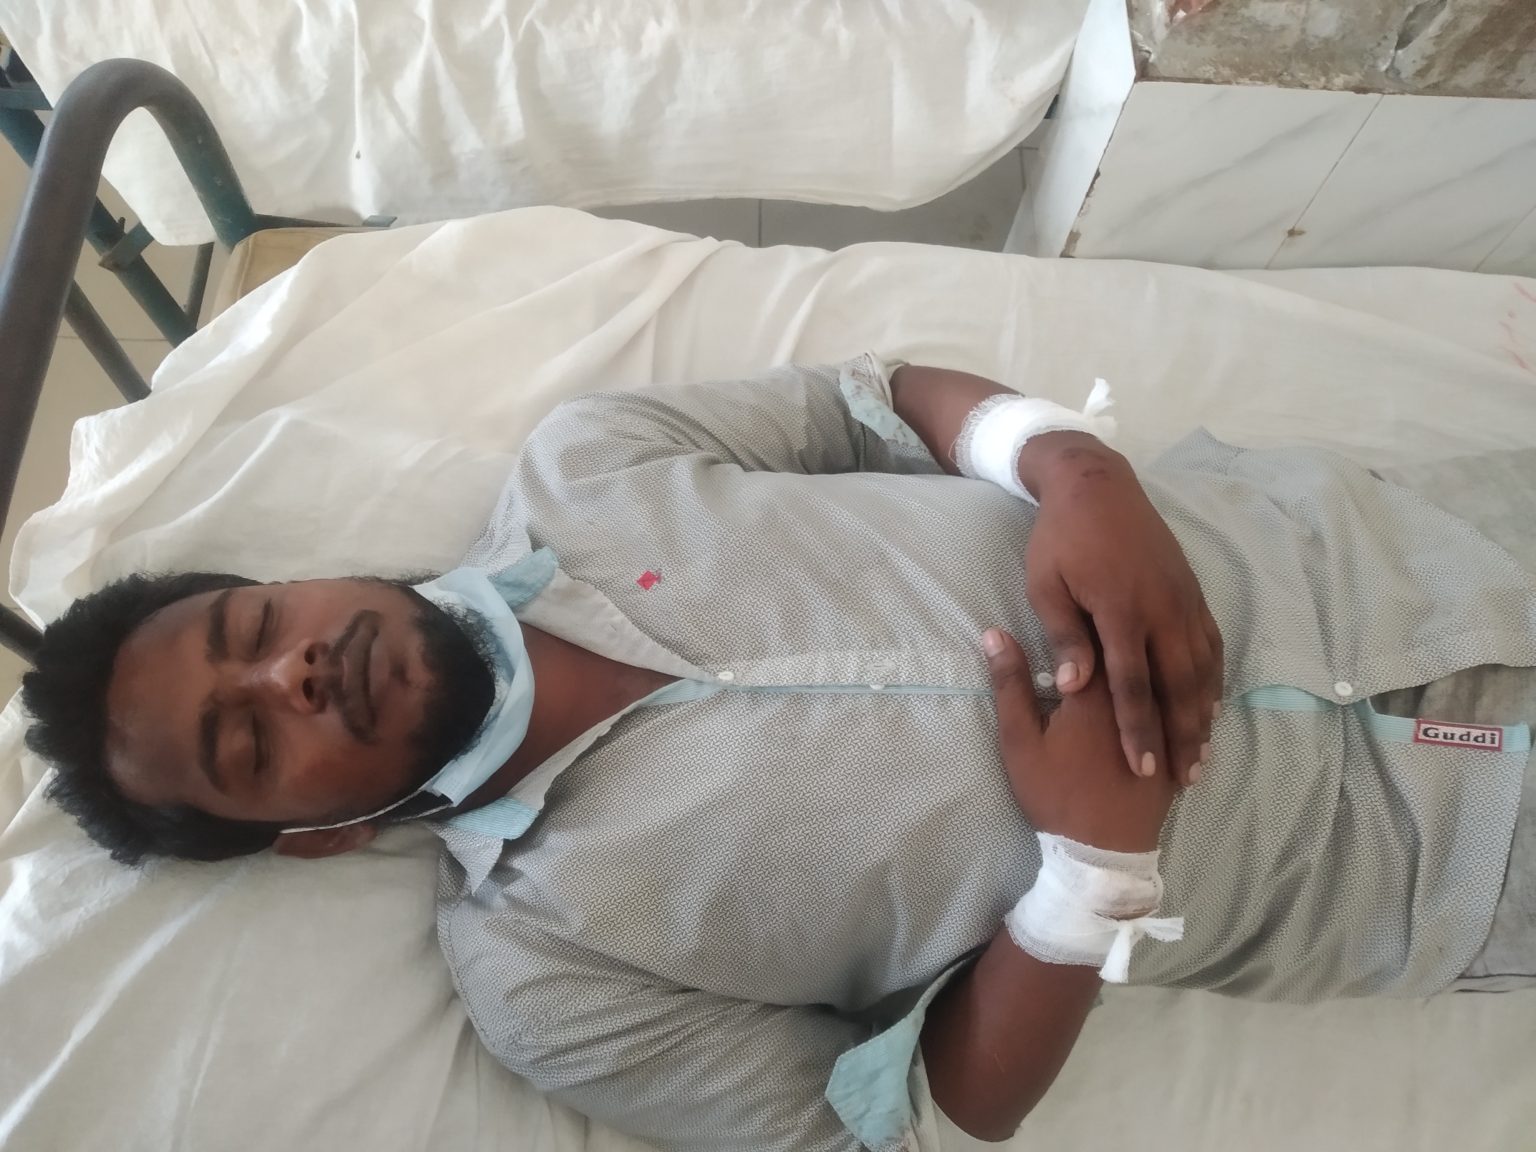 Kalapara photo Eight injured over controlling sluice gate at Kalapara of Patuakhali 2 পটুয়াখালীর কলাপাড়ায় স্লুইজ গেটের নিয়ন্ত্রন নিয়ে সংঘর্ষ, আহত ৮